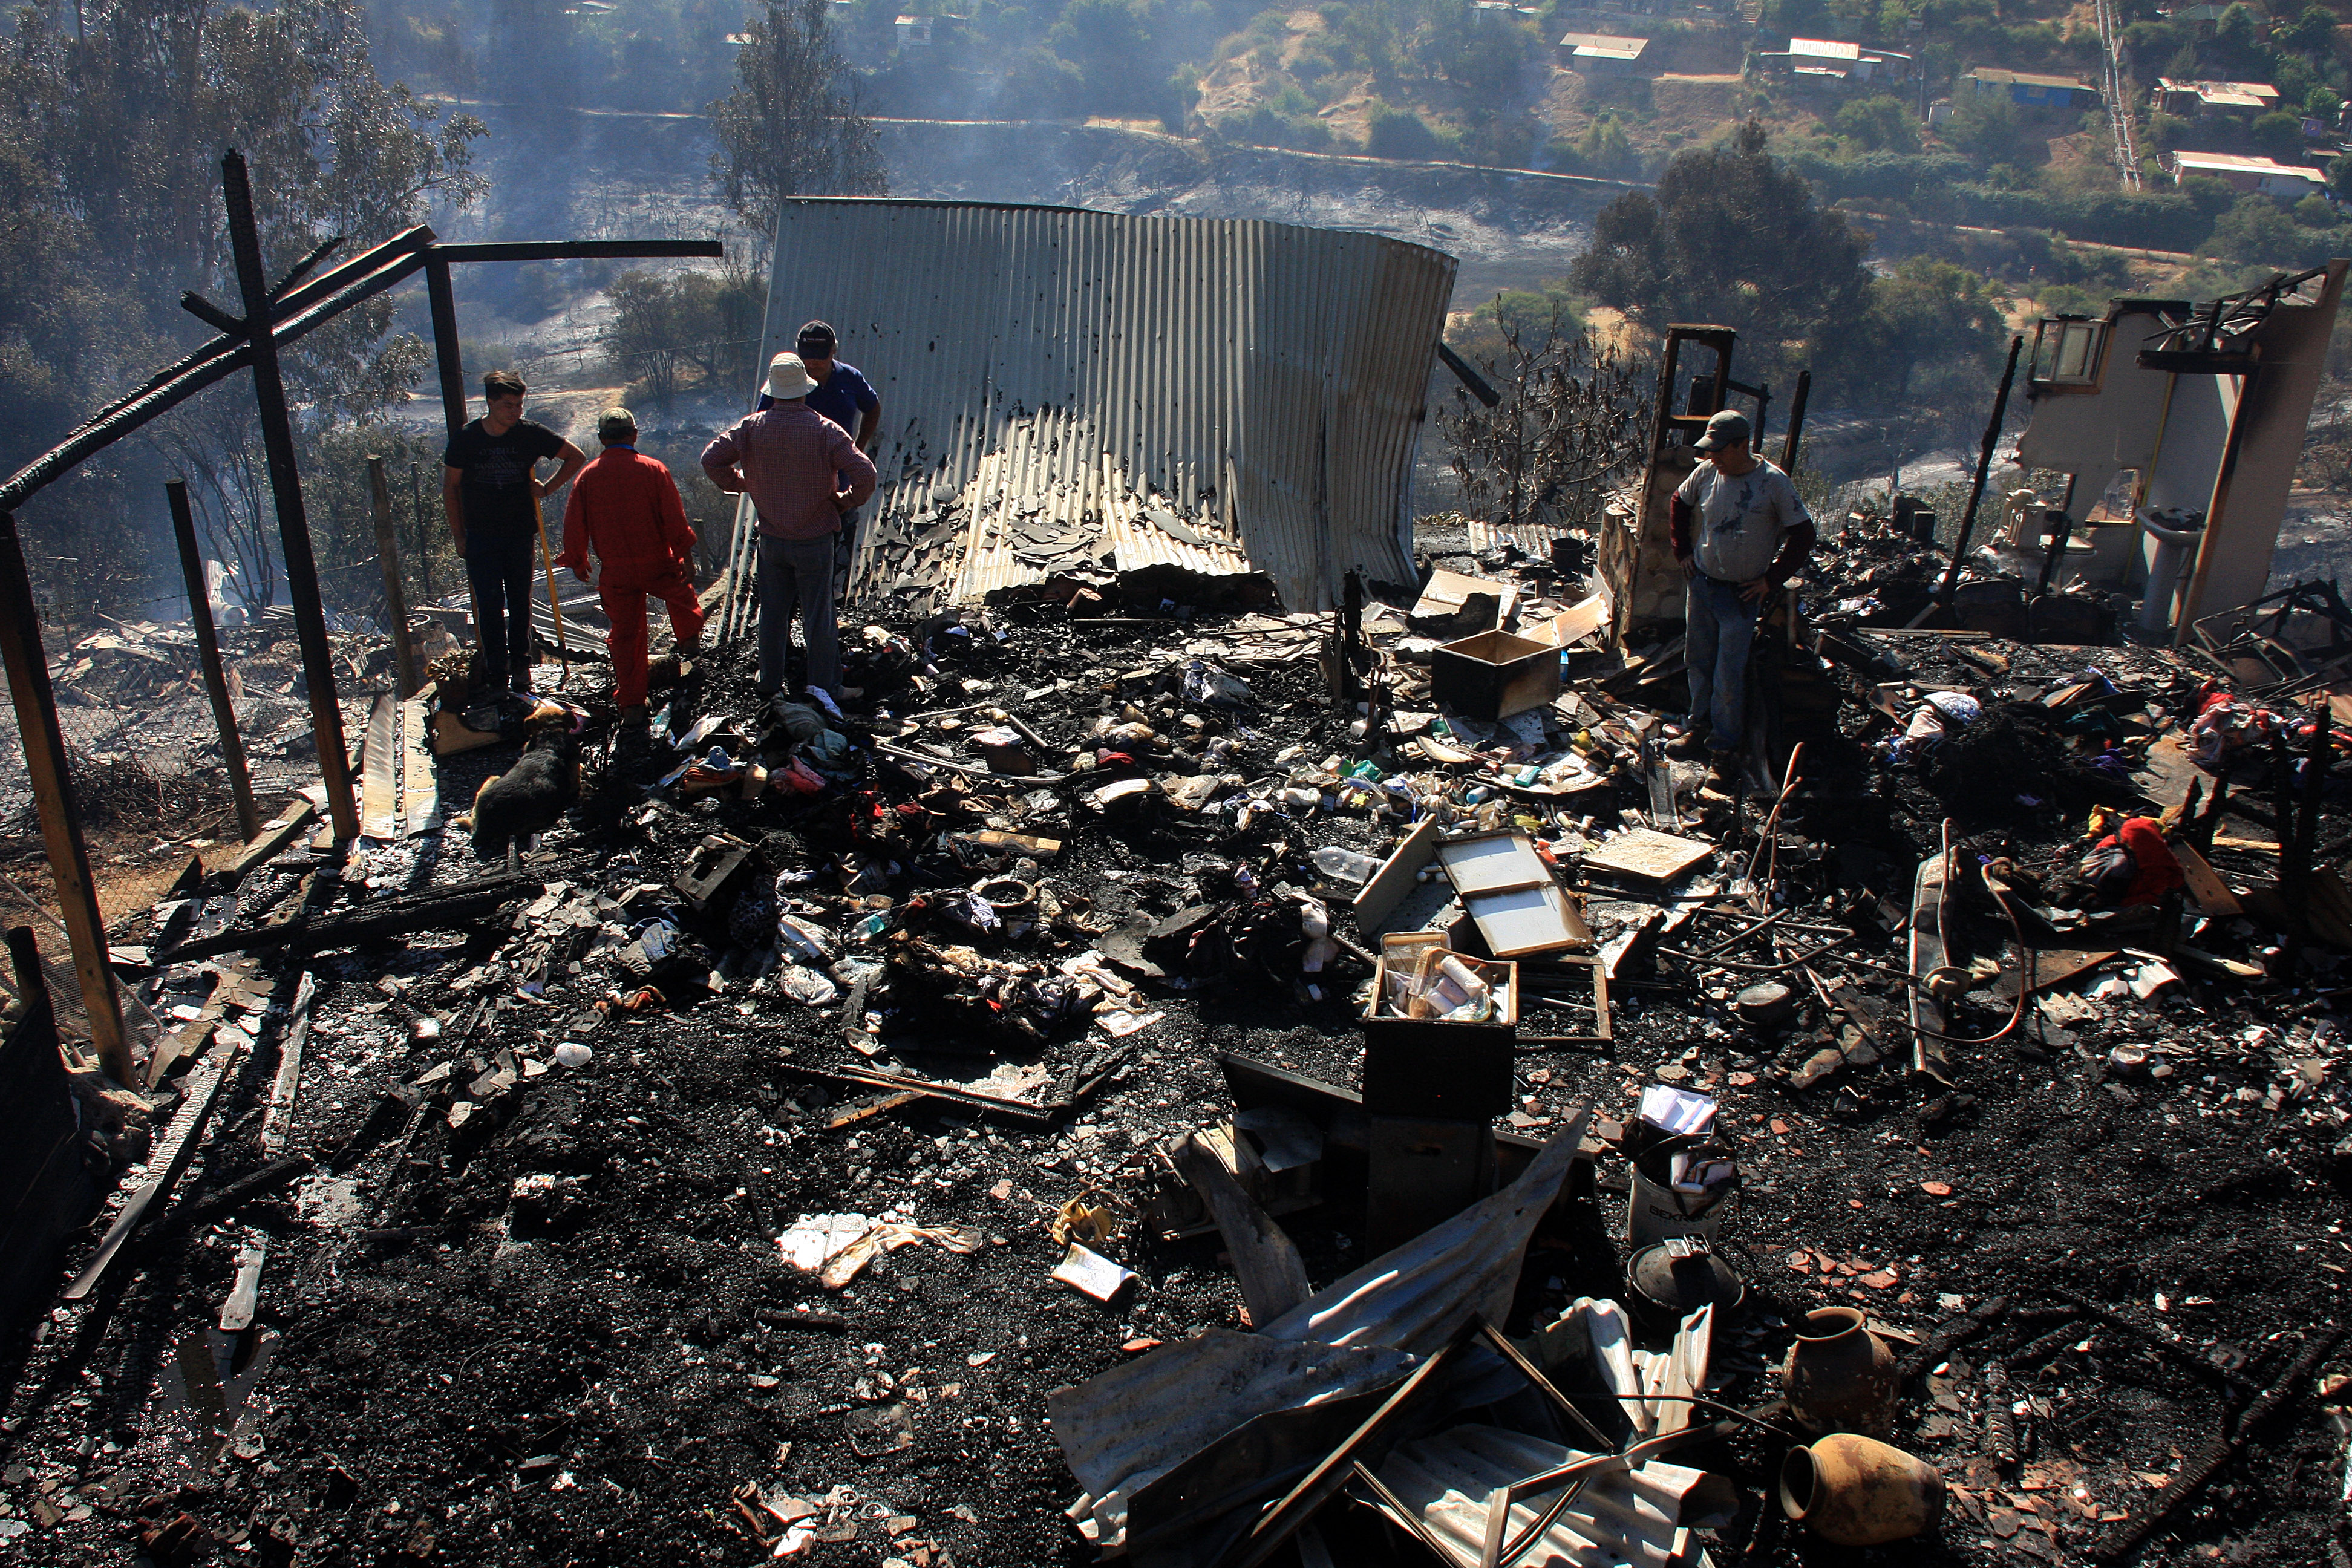 03 DE ENERO DE 2019/LIMACHE Incendio destruye 50 viviendas en el sector Los Maitenes de Limache , carabineros dispuso la evacuación preventiva en la zona FOTO: SANTIAGO MORALES/AGENCIAUNO